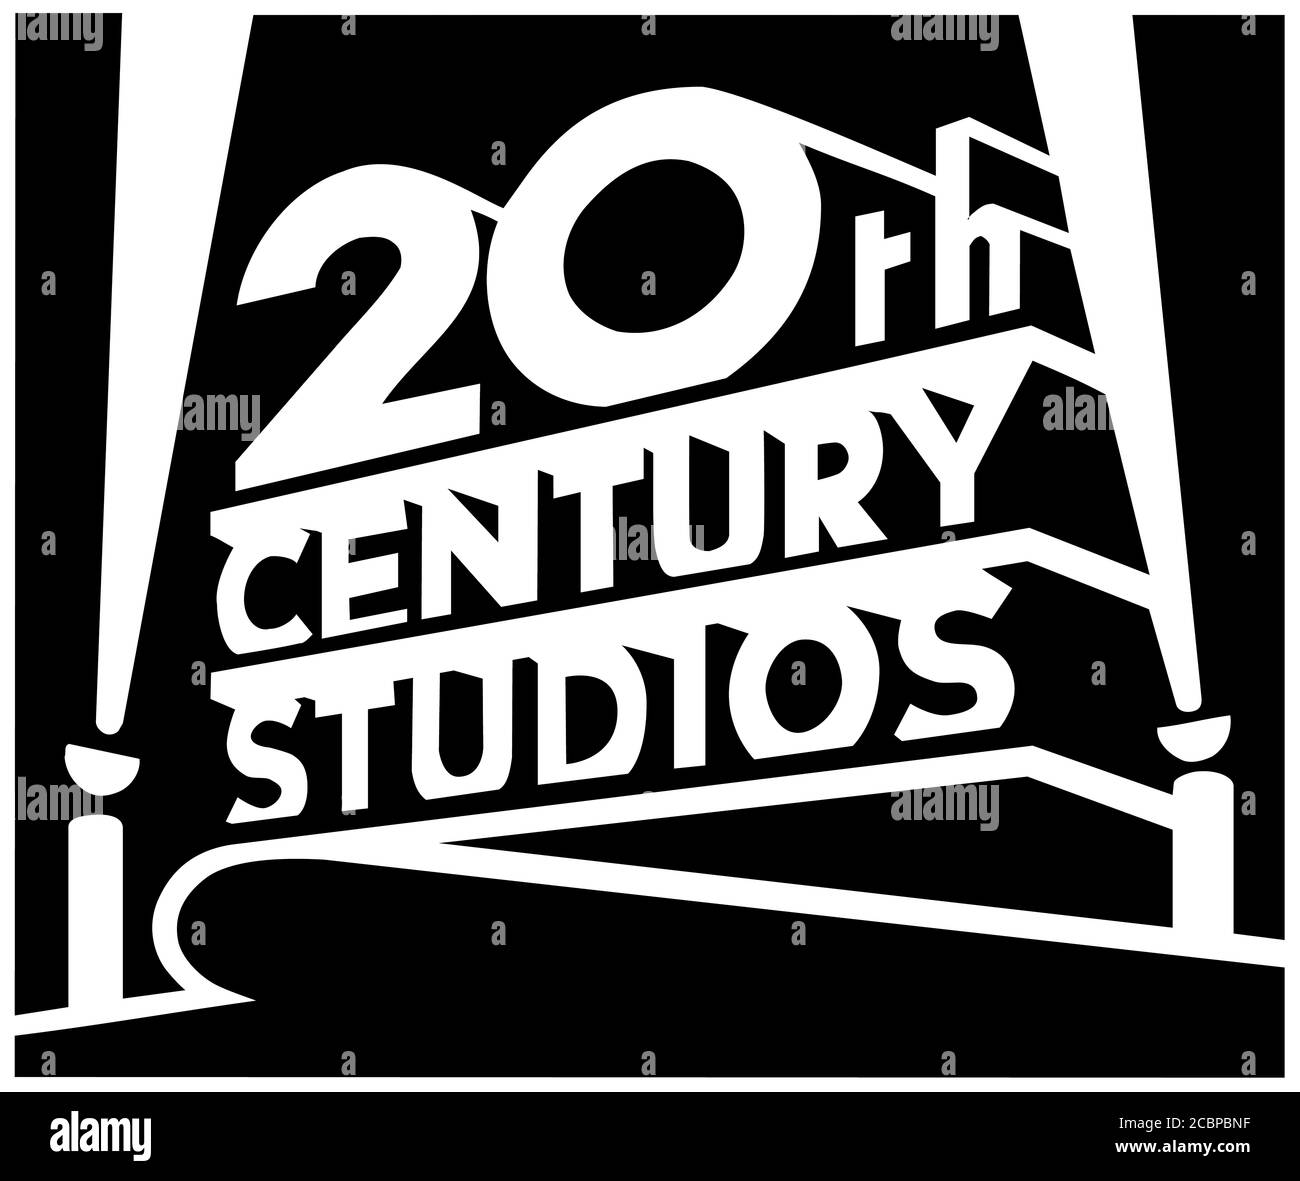 Logo 20th Century Studios, film production company Stock Photo